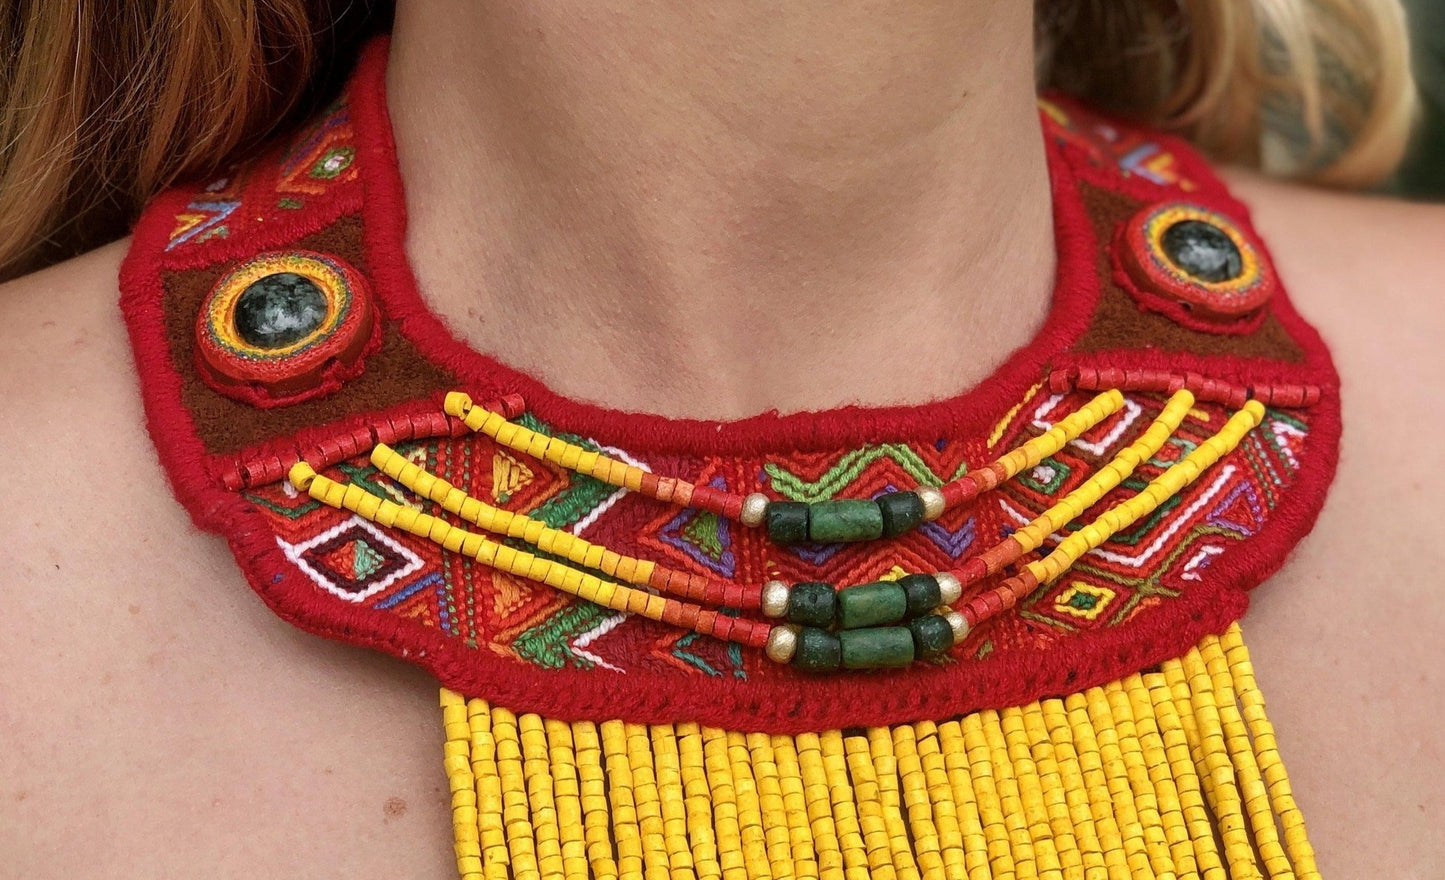 Collares de Tejido Ceremonial con Piedras Preciosas - "Semuc Champey"